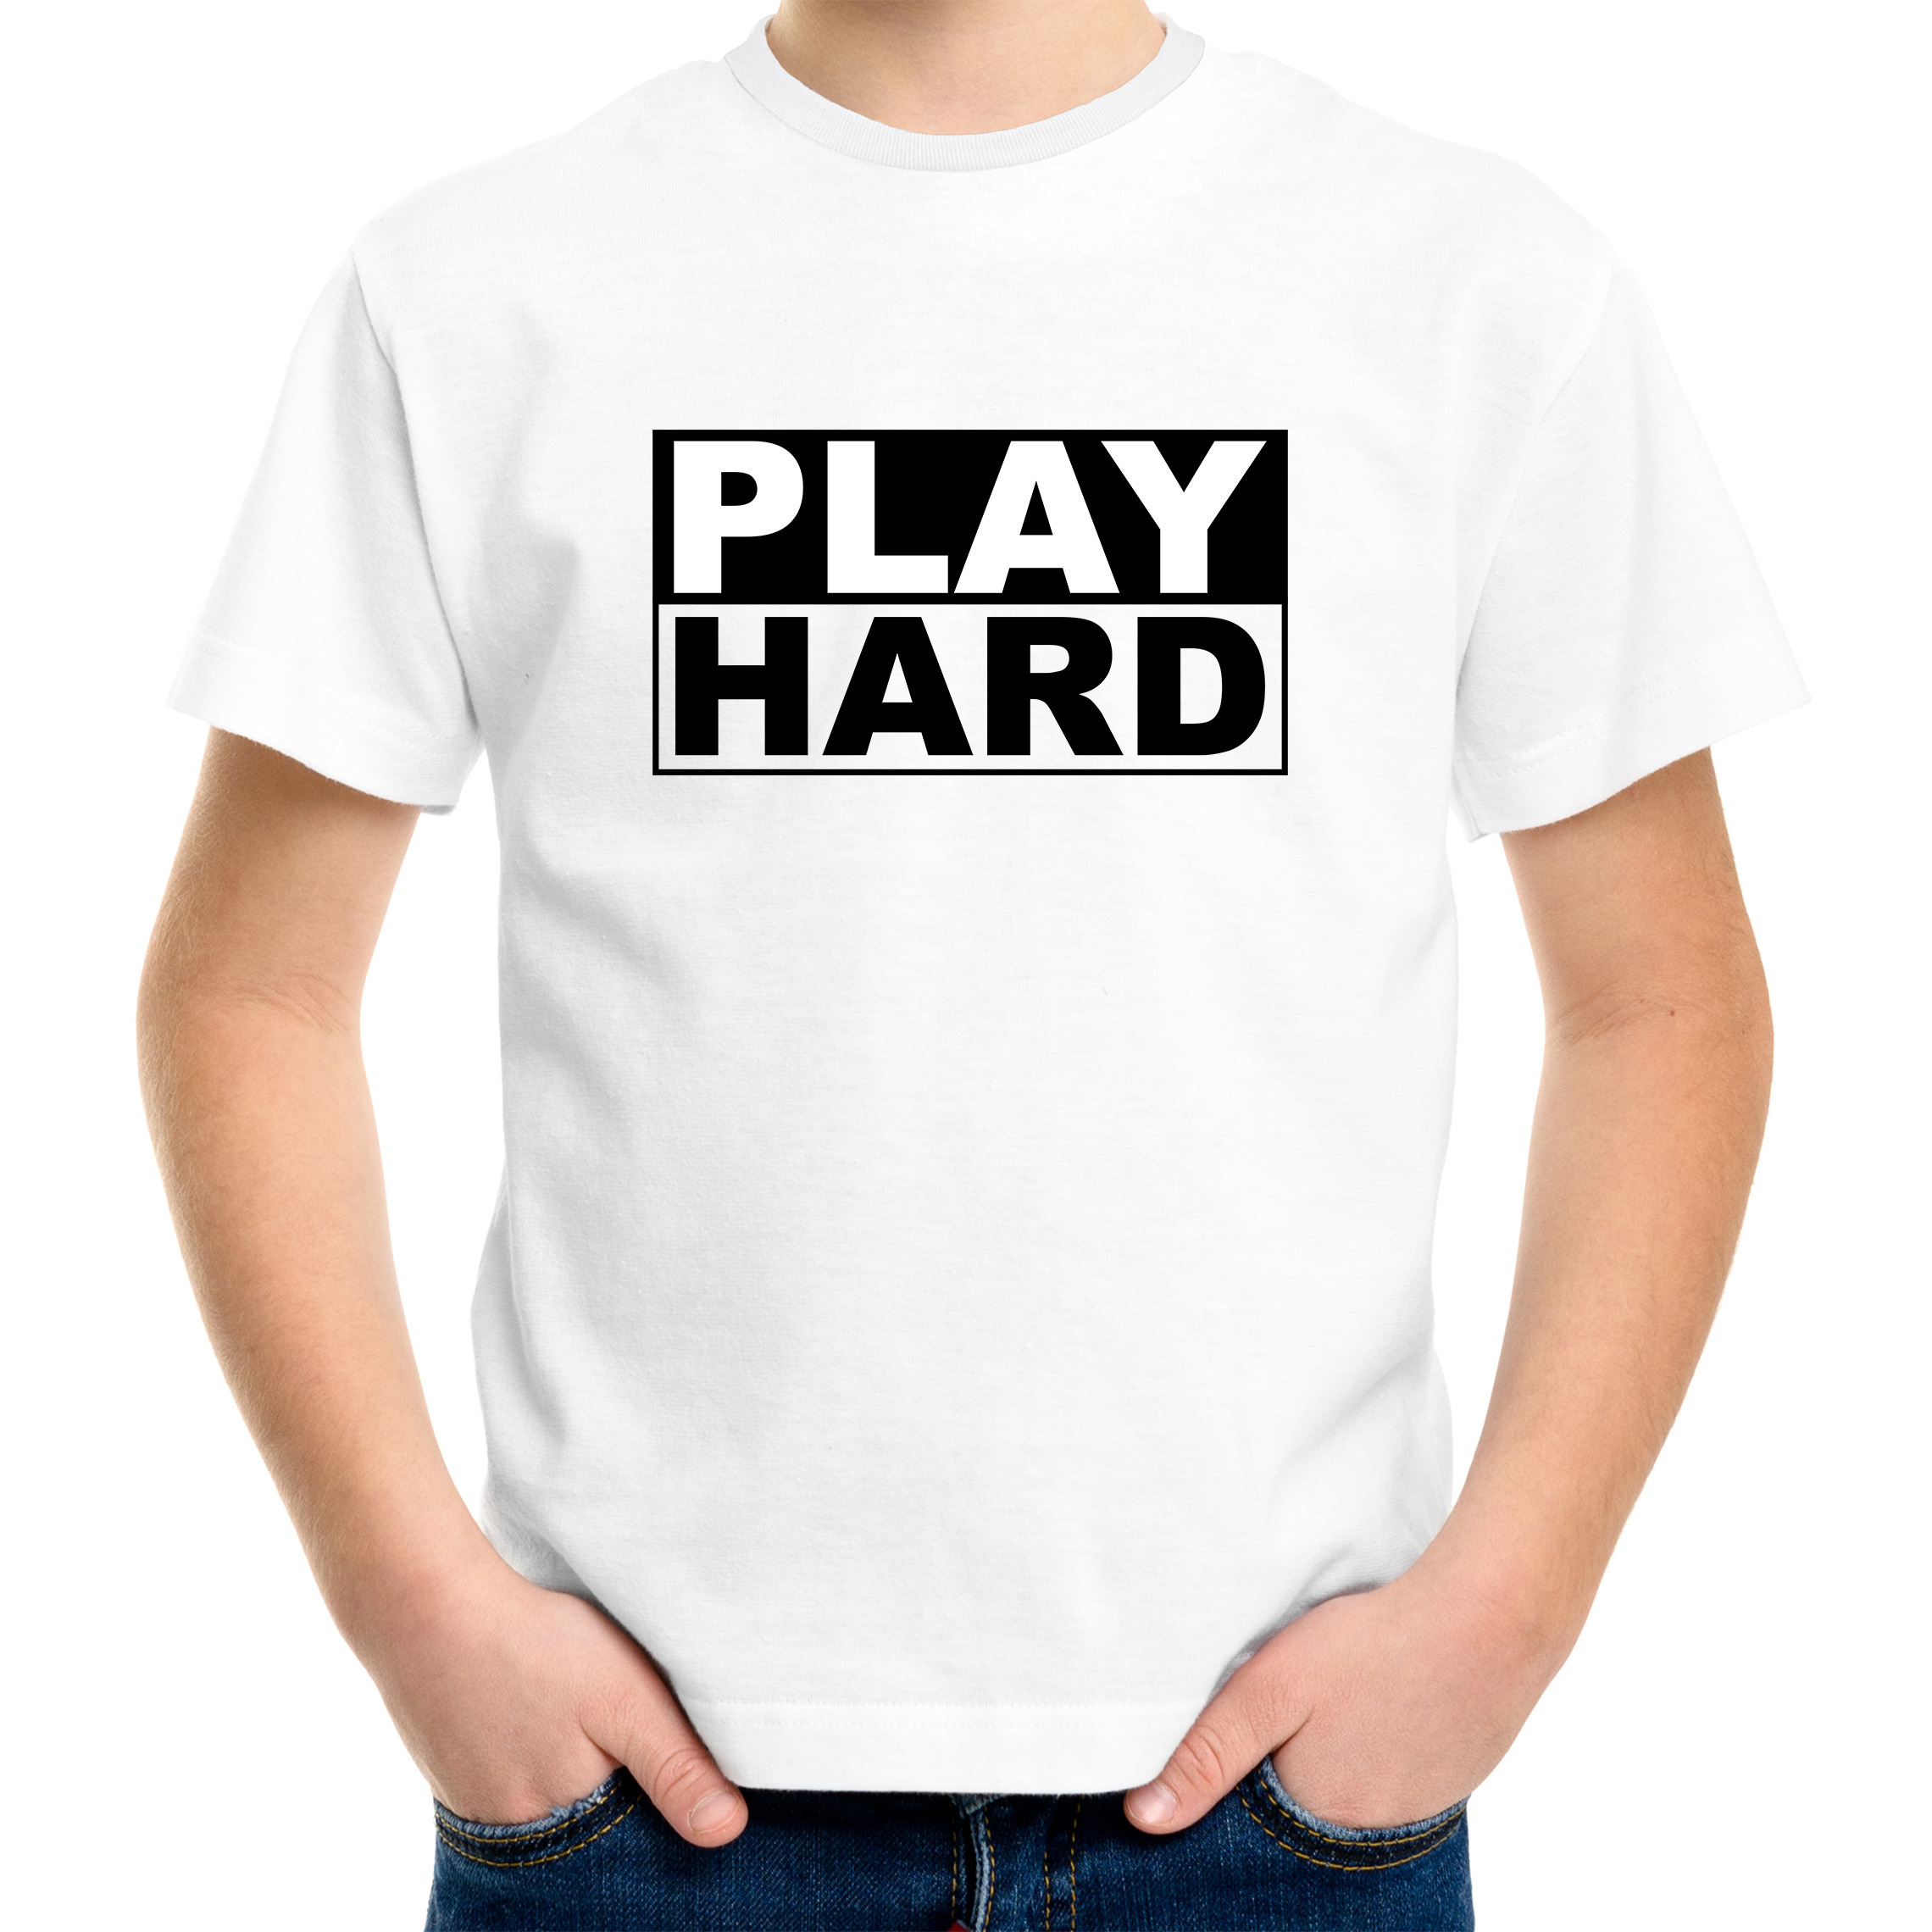 Play hard cadeau t-shirt wit voor kinderen/kids